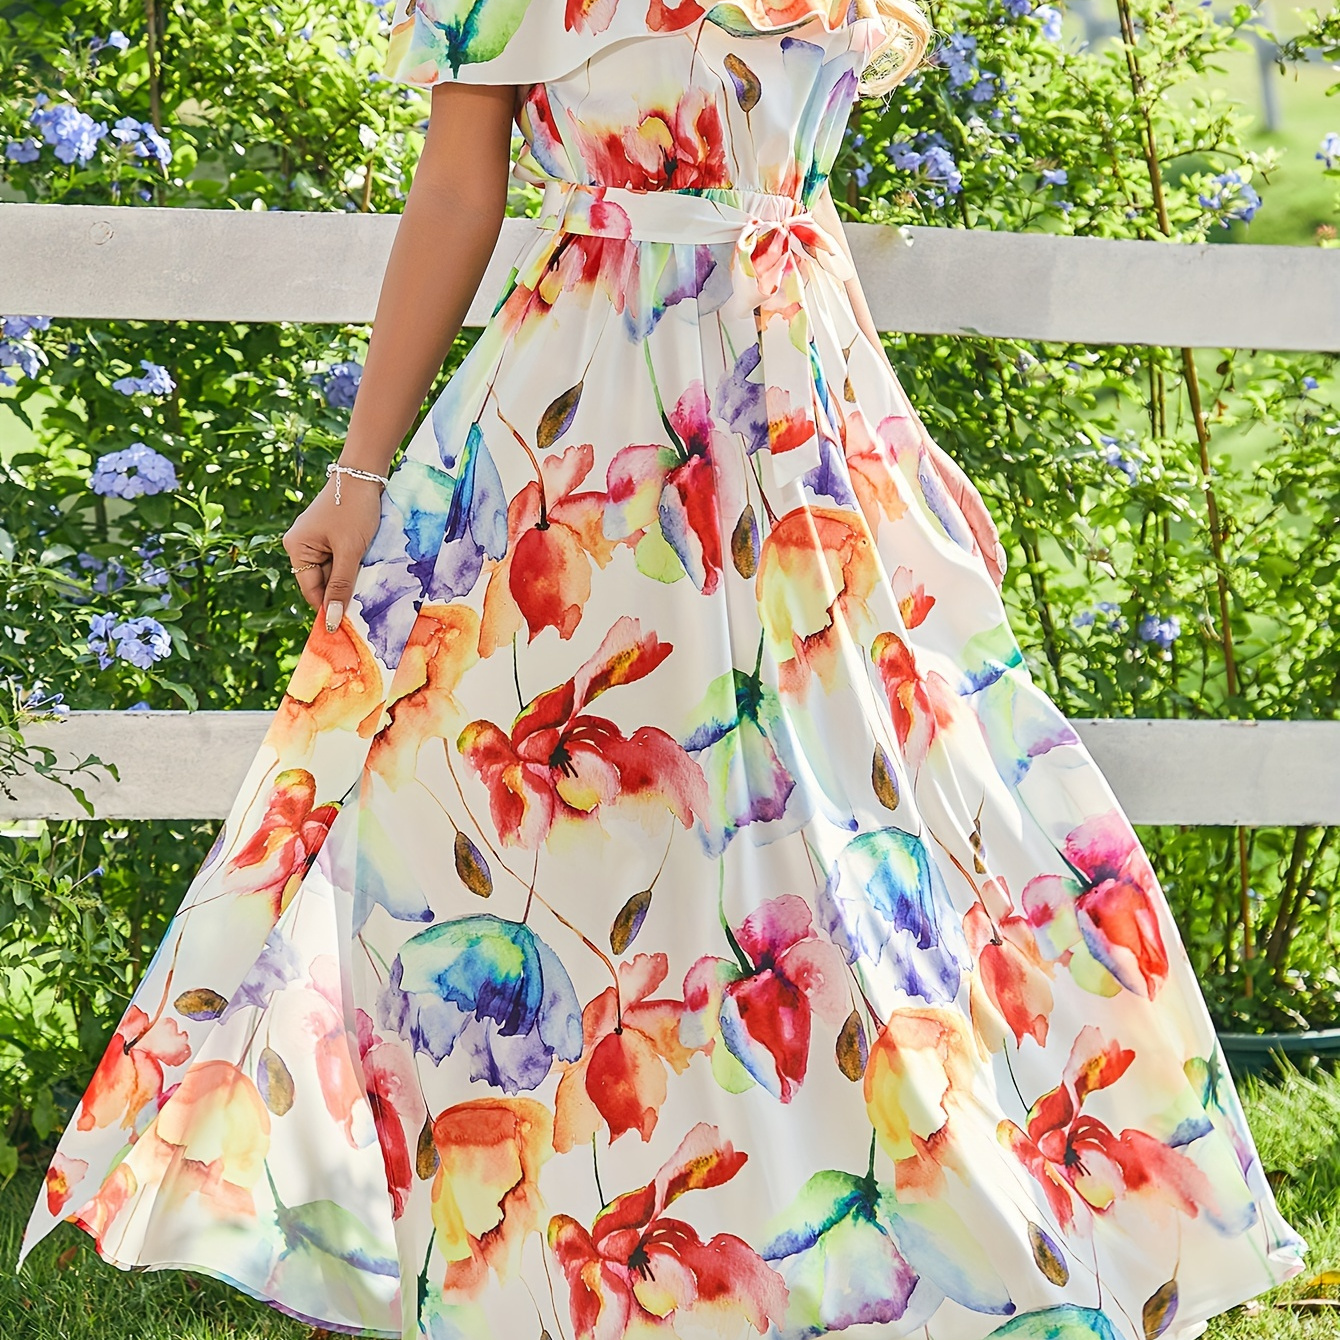 

Floral Print Off Shoulder Dress, Elegant Short Sleeve Belted Dress For Spring & Summer, Women's Clothing